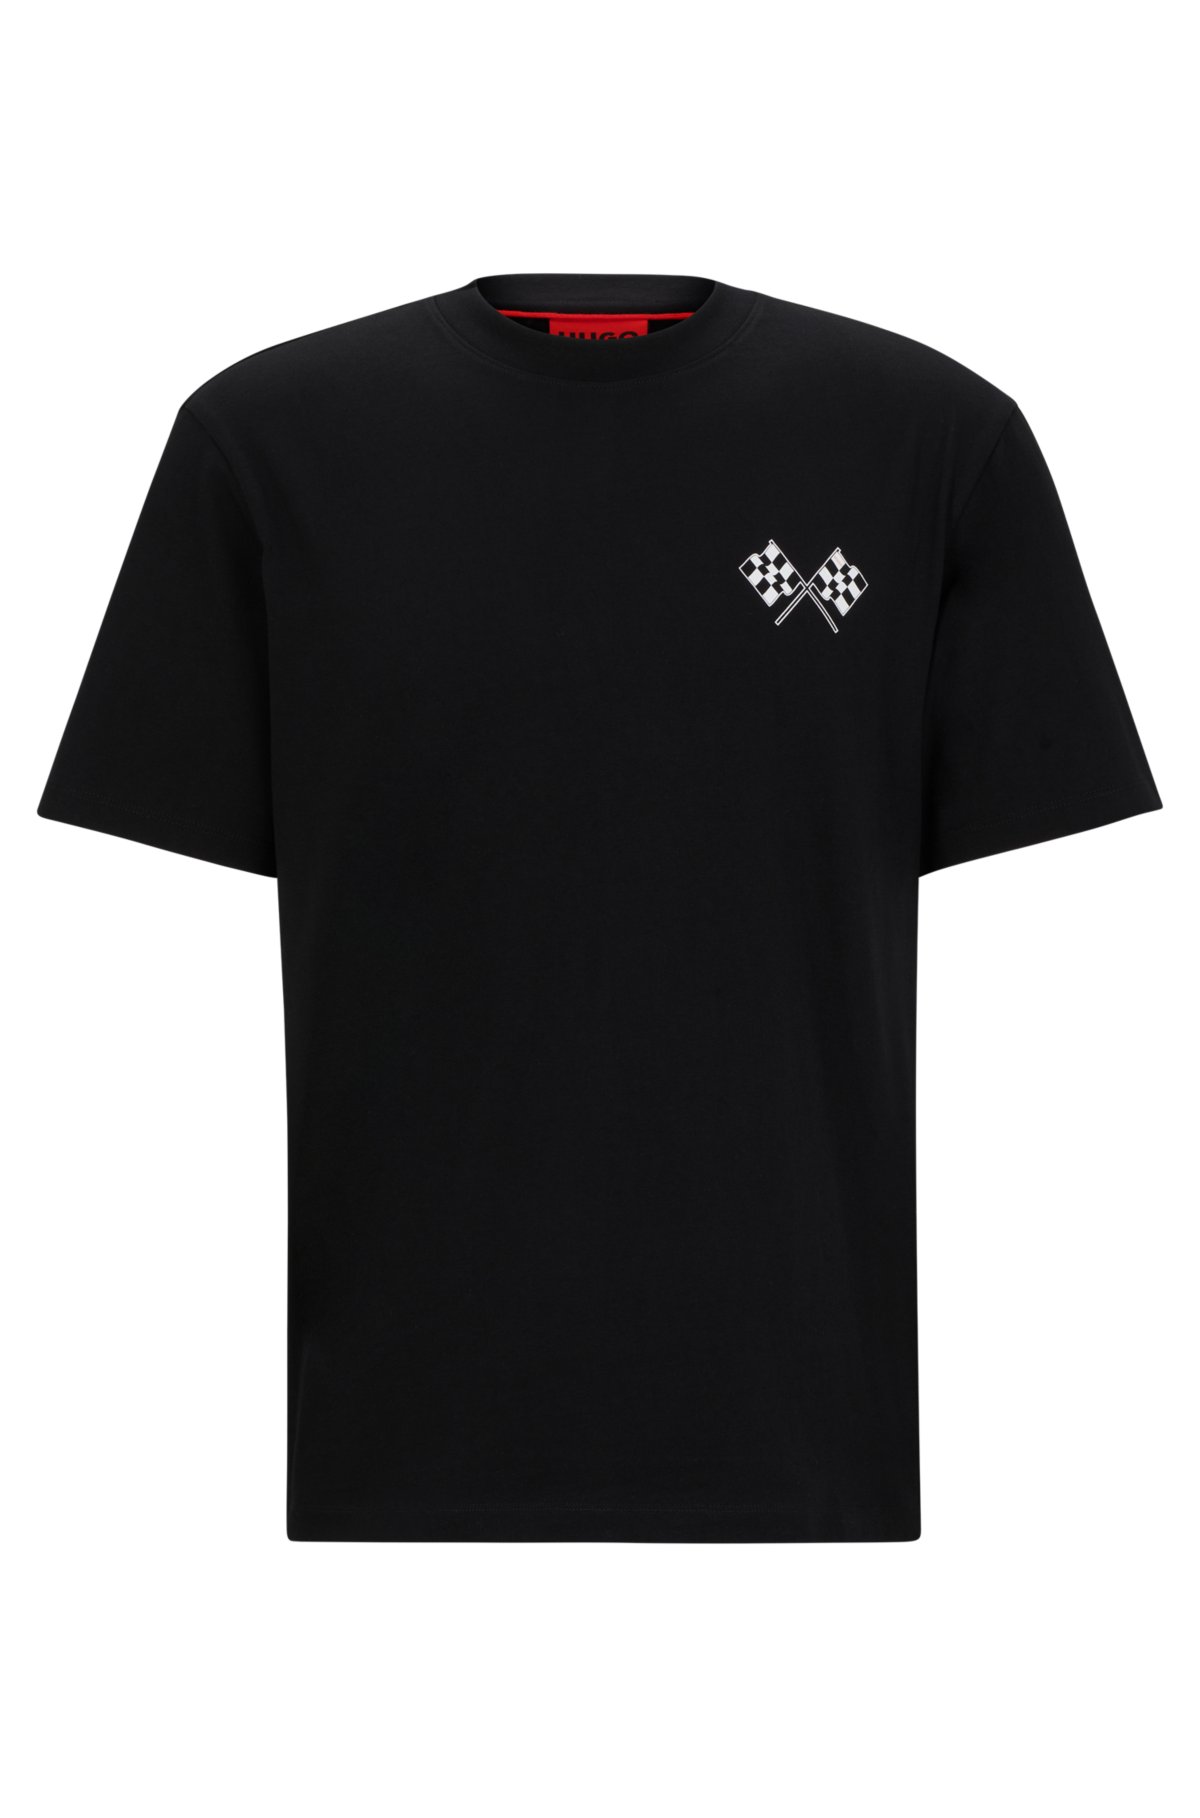 MEN'S SEAMLESS SHORT SLEEVE TOP, Azure/Light Steel, T-Shirts & Tops